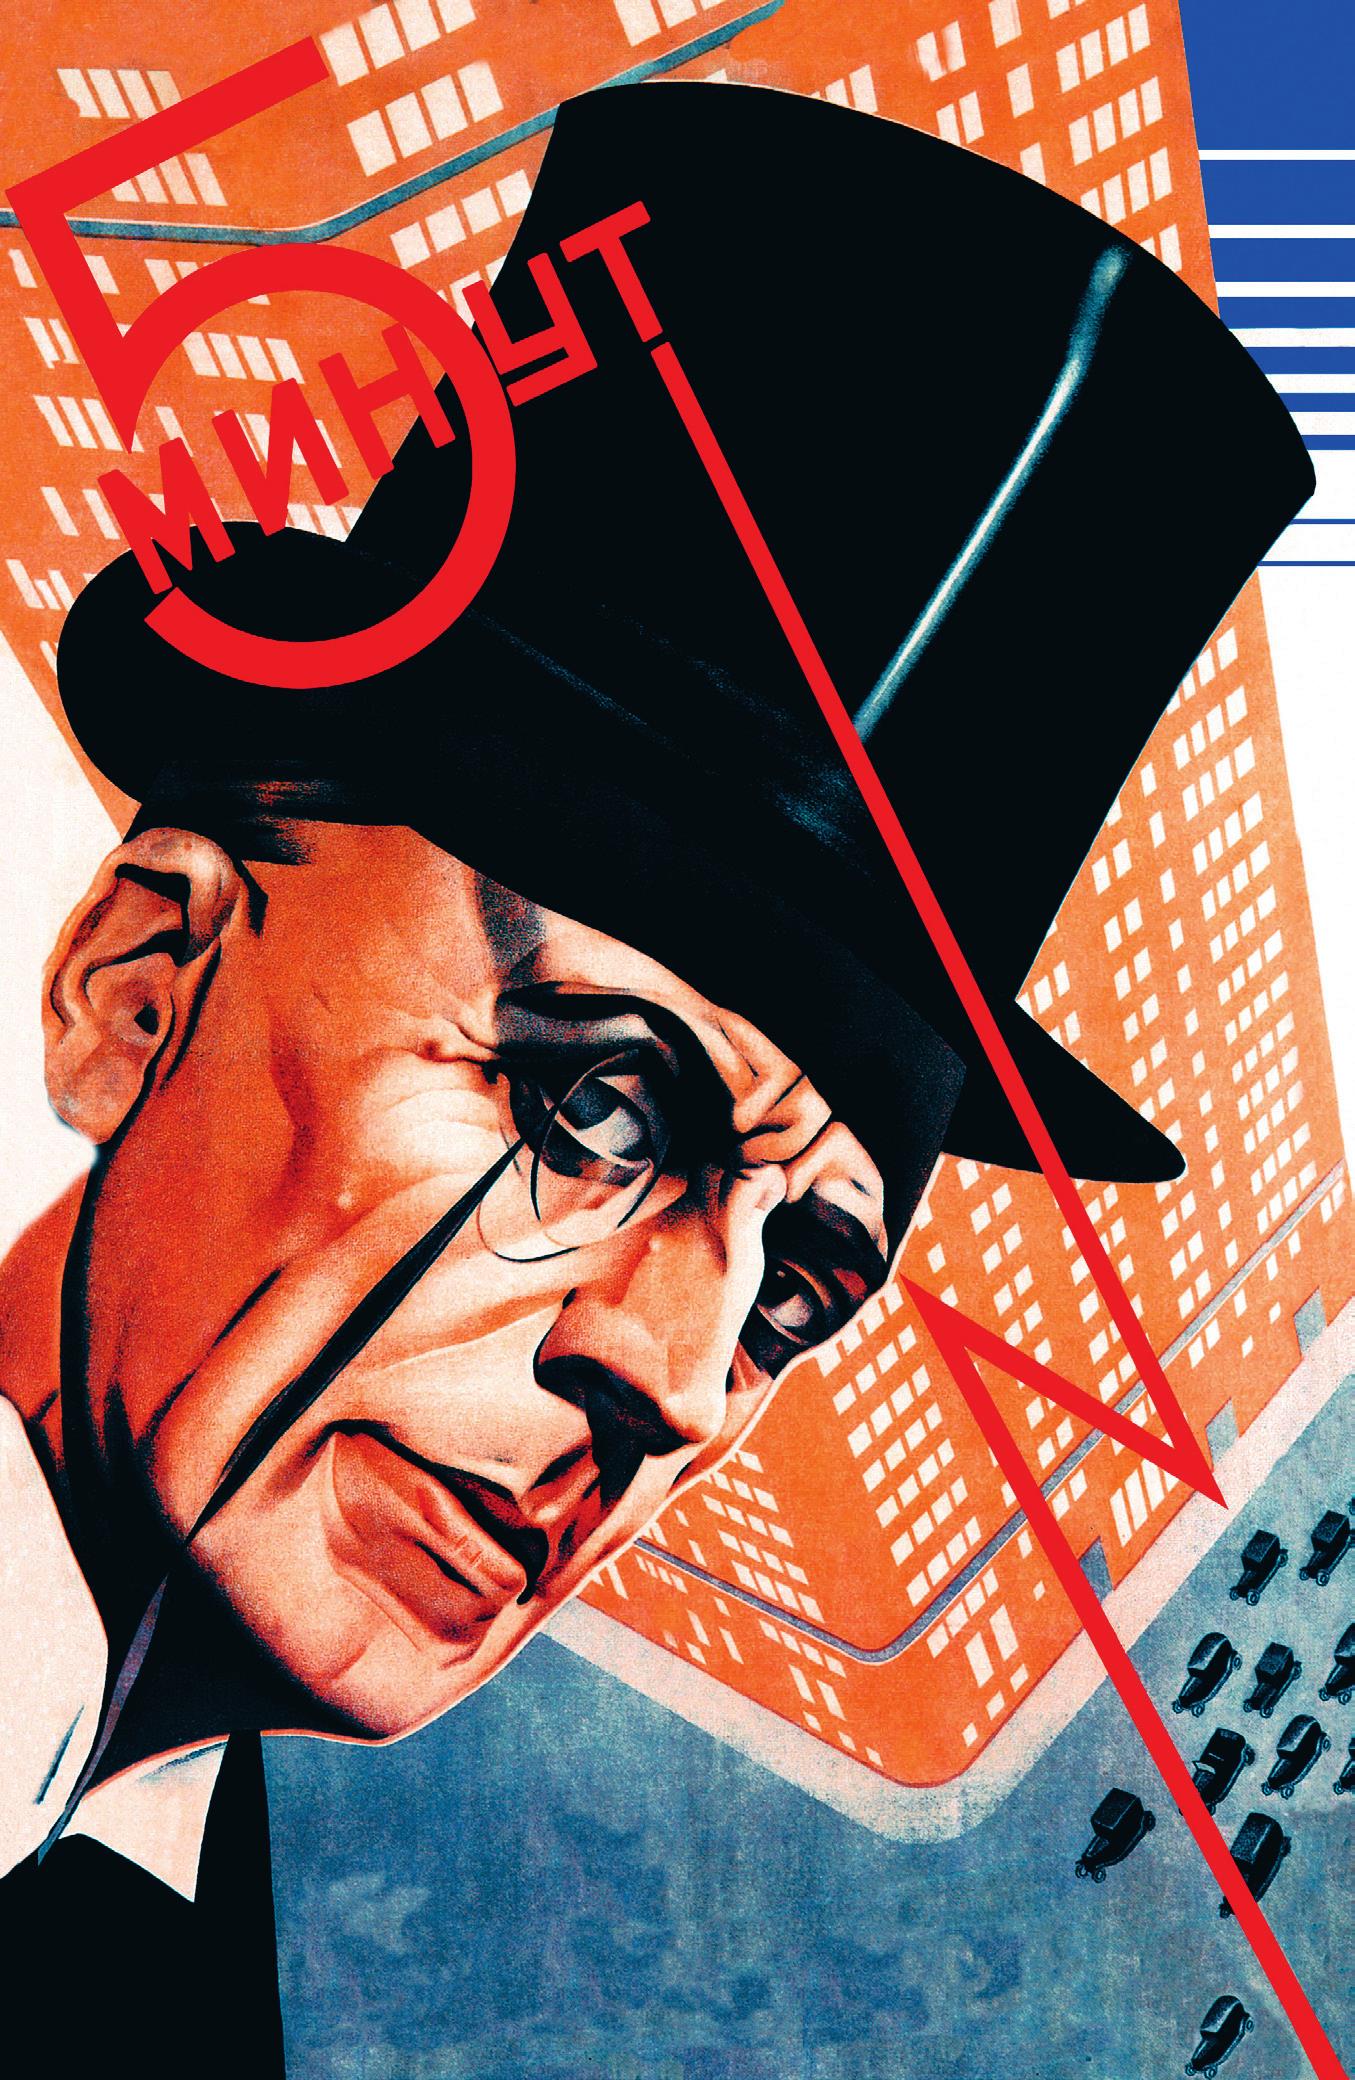 《五分钟》 （1929） 安纳托利·贝尔斯基的设计是俄国构成主义海报艺术的重要作品。设计师将其中一个人物的头像放在城市街区的上方，并配以类似闪电的字体。